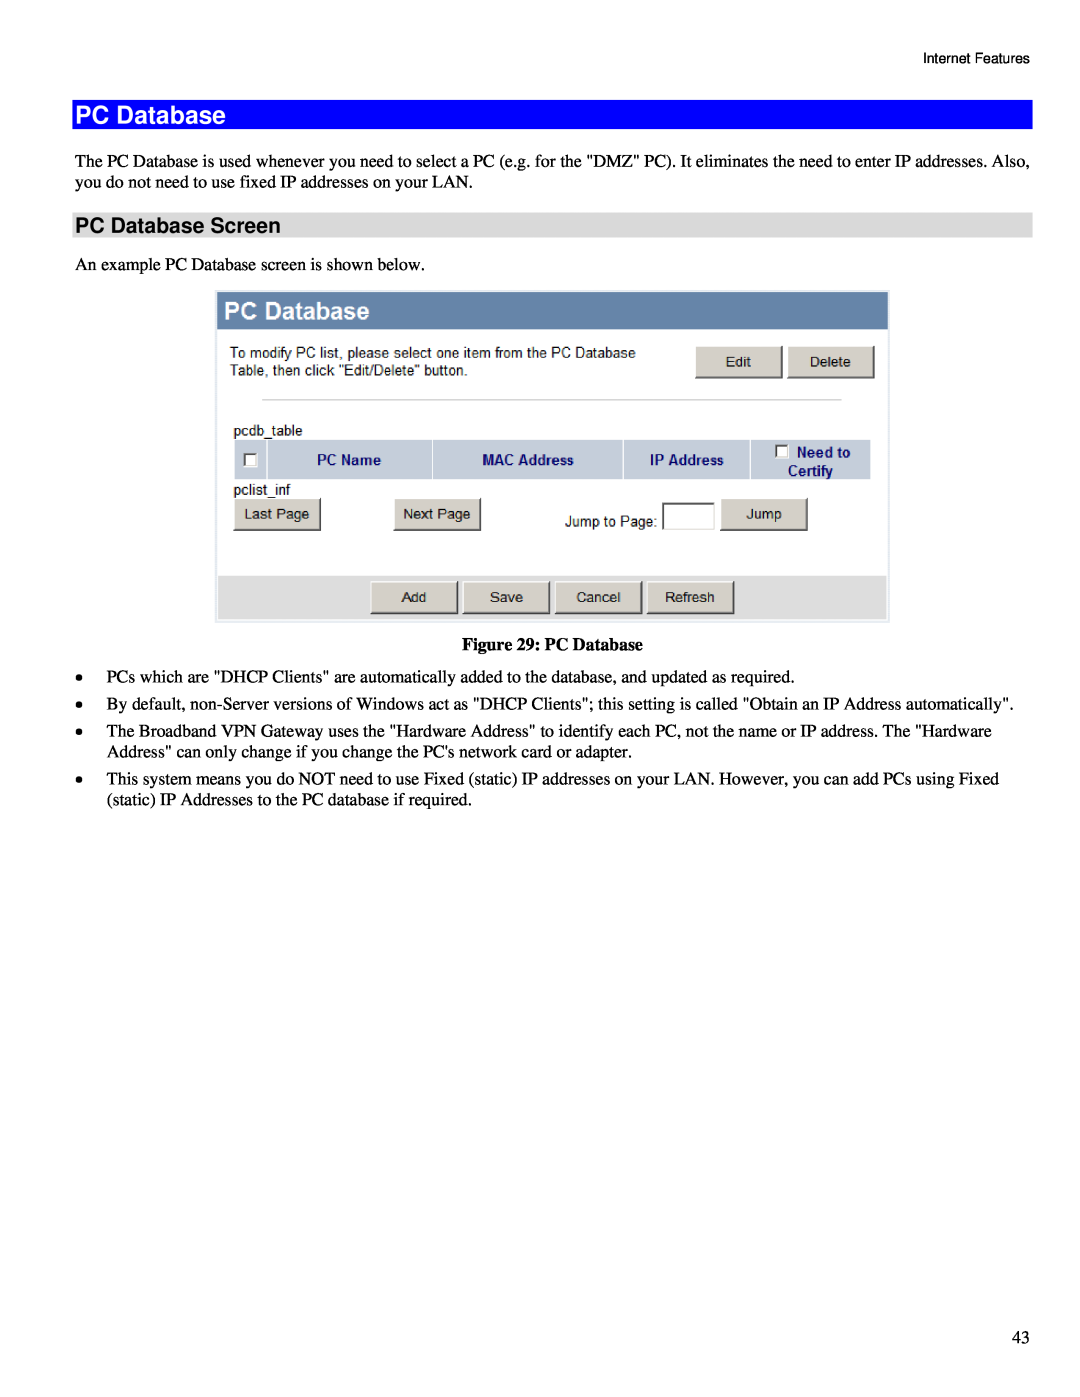 TRENDnet TW100-BRV324 manual PC Database Screen 